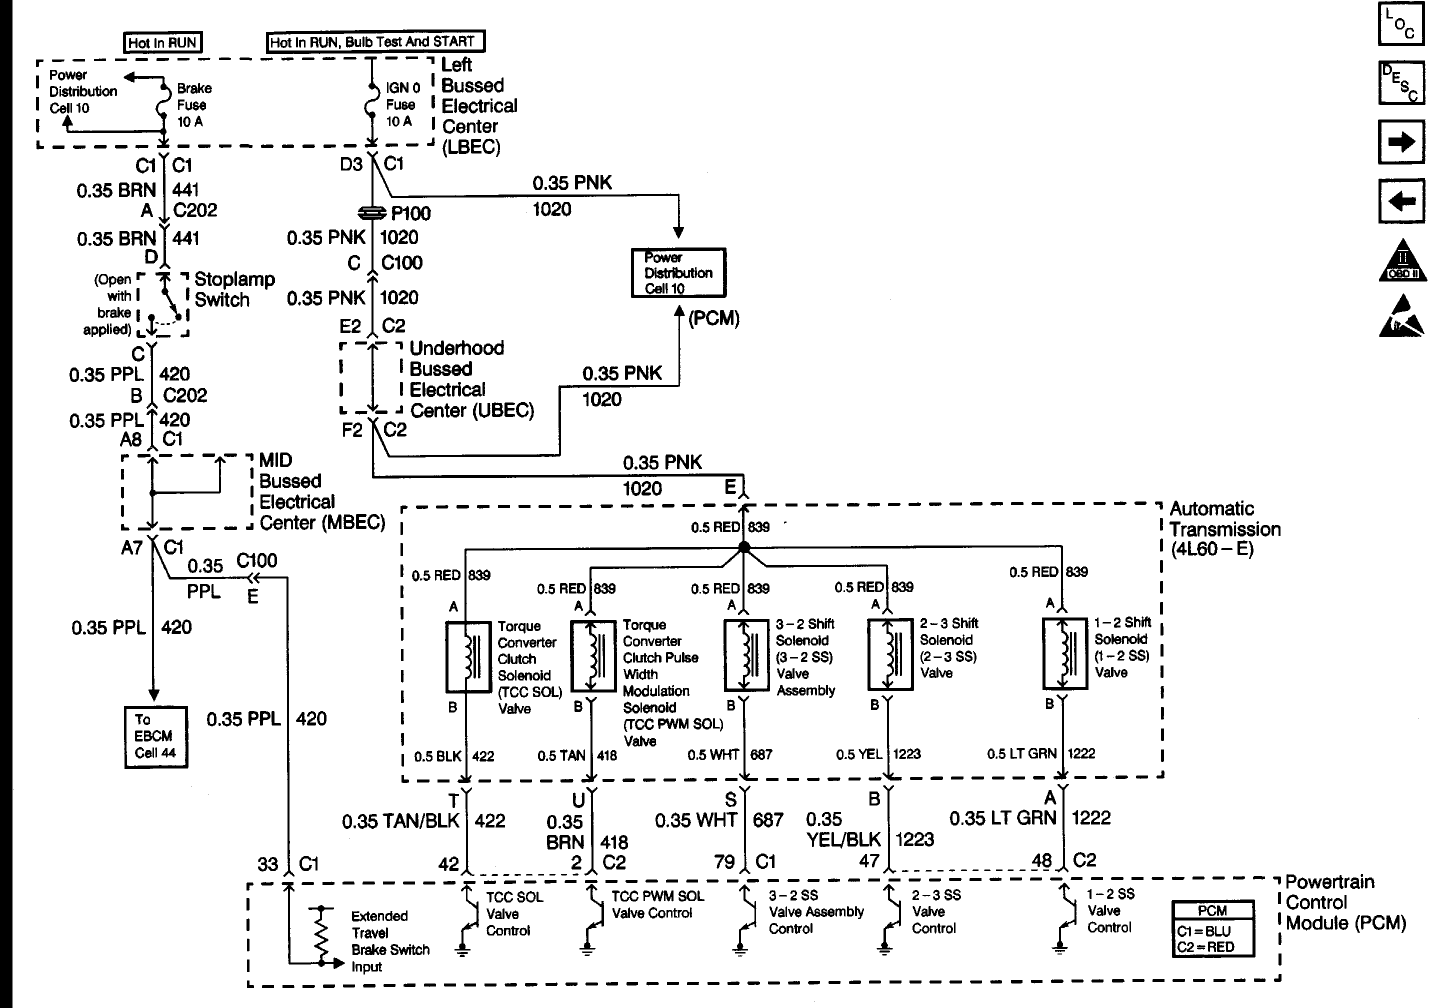 Wiring Schematic For 1999 Gmc Sierra, Gmc Sierra Wiring Diagram Pdf